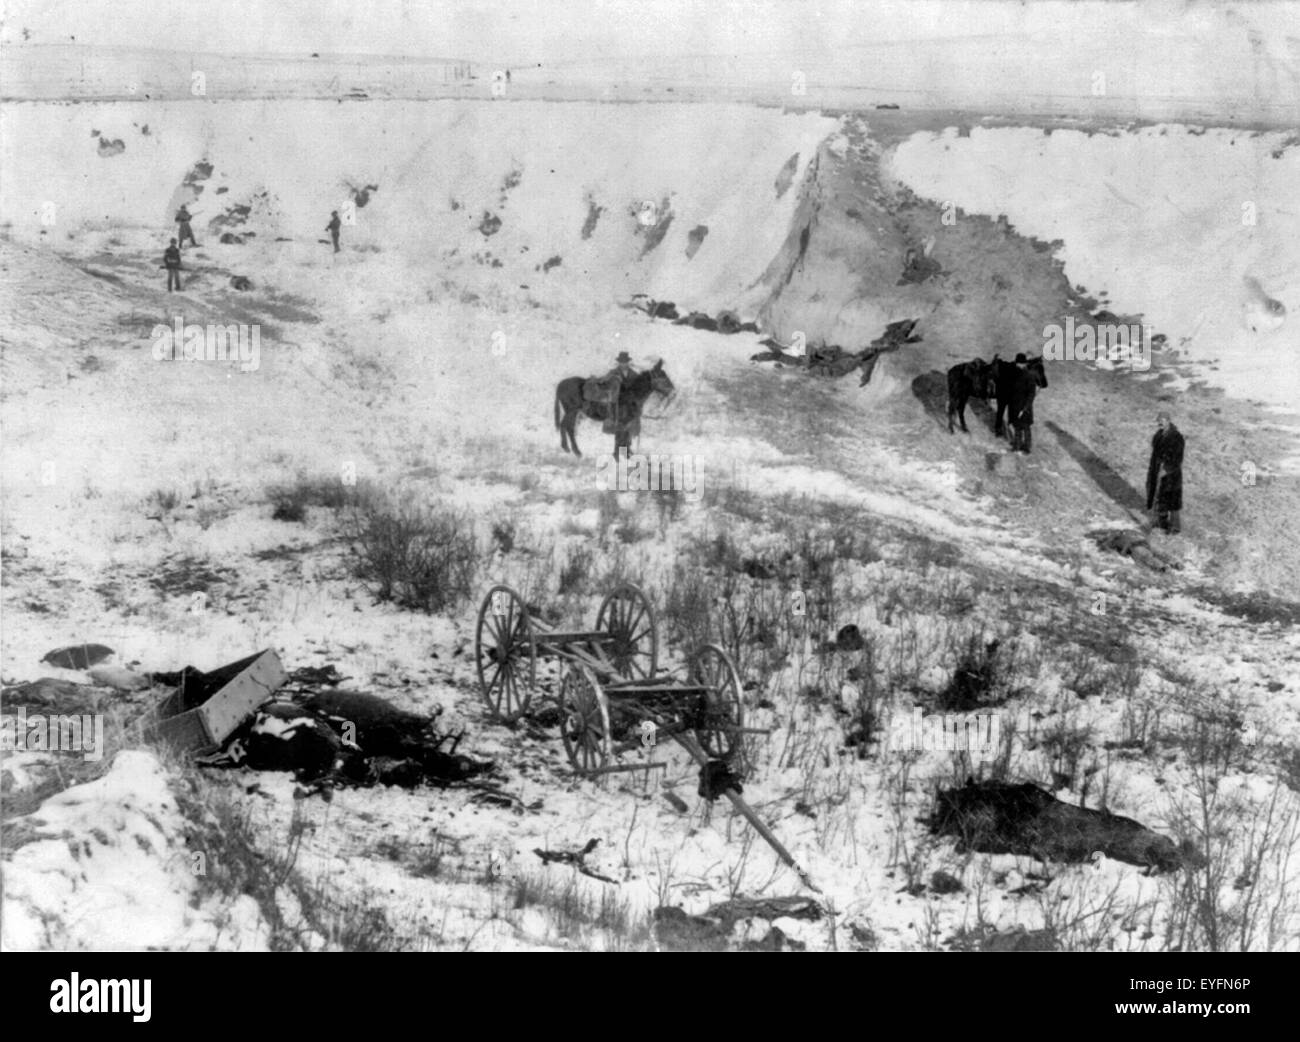 Vogelperspektive des Canyon am Wounded Knee, South Dakota - Tote Pferde und Indianer, 1891 Stockfoto